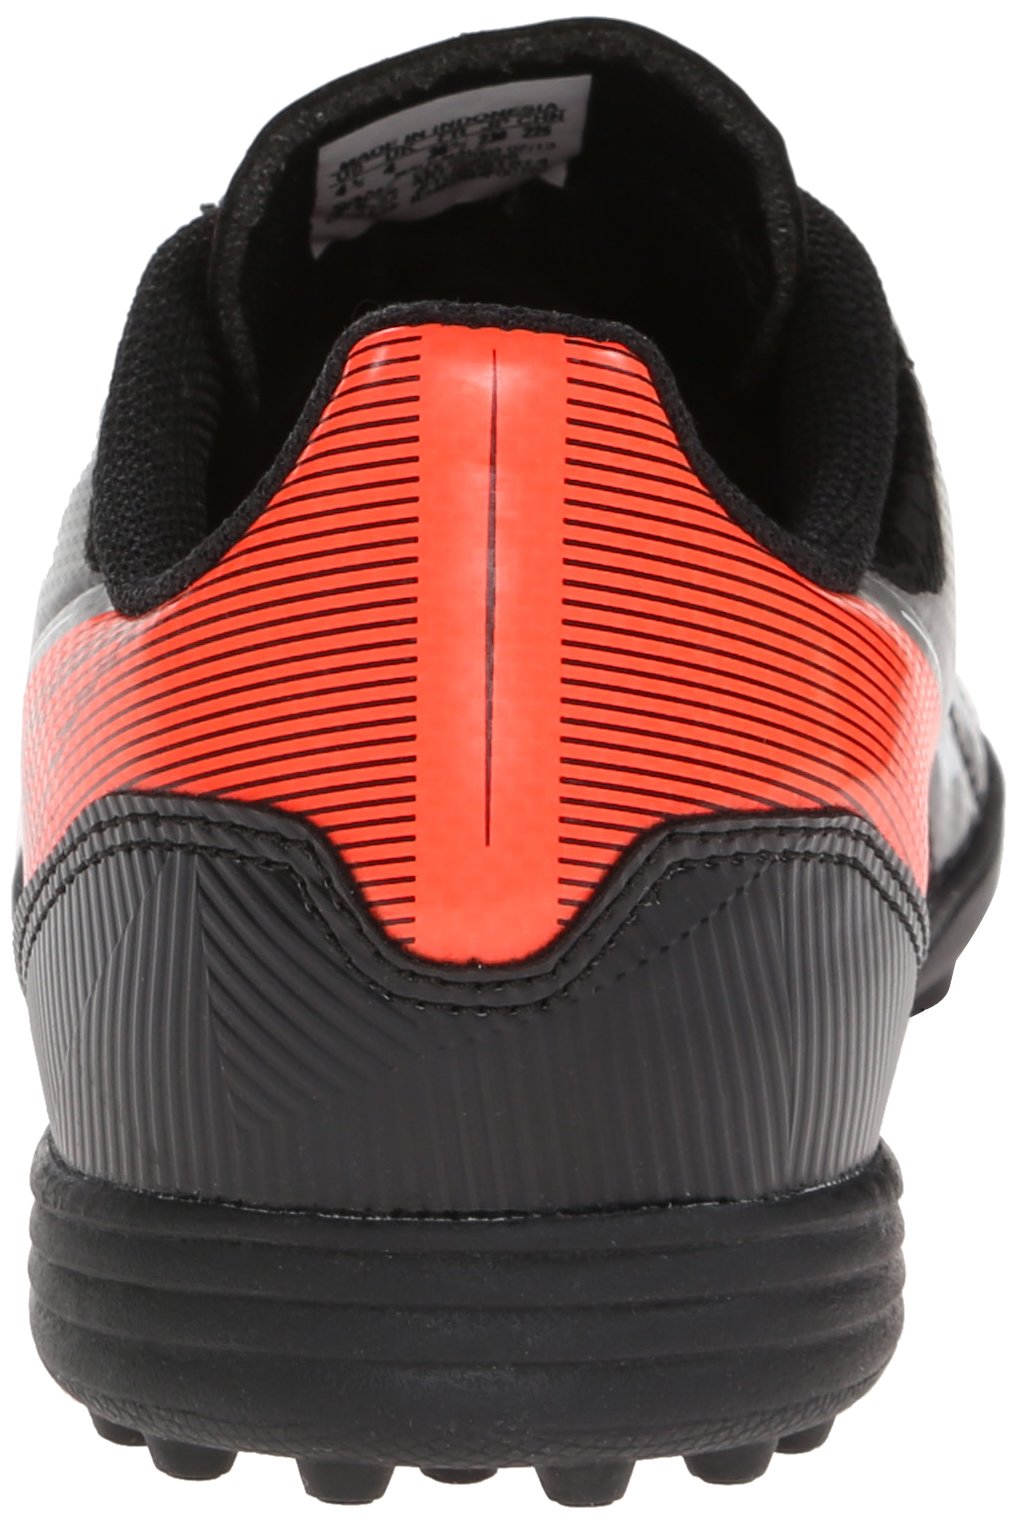 adidas F5 TRX TF JR (4) Black/Red